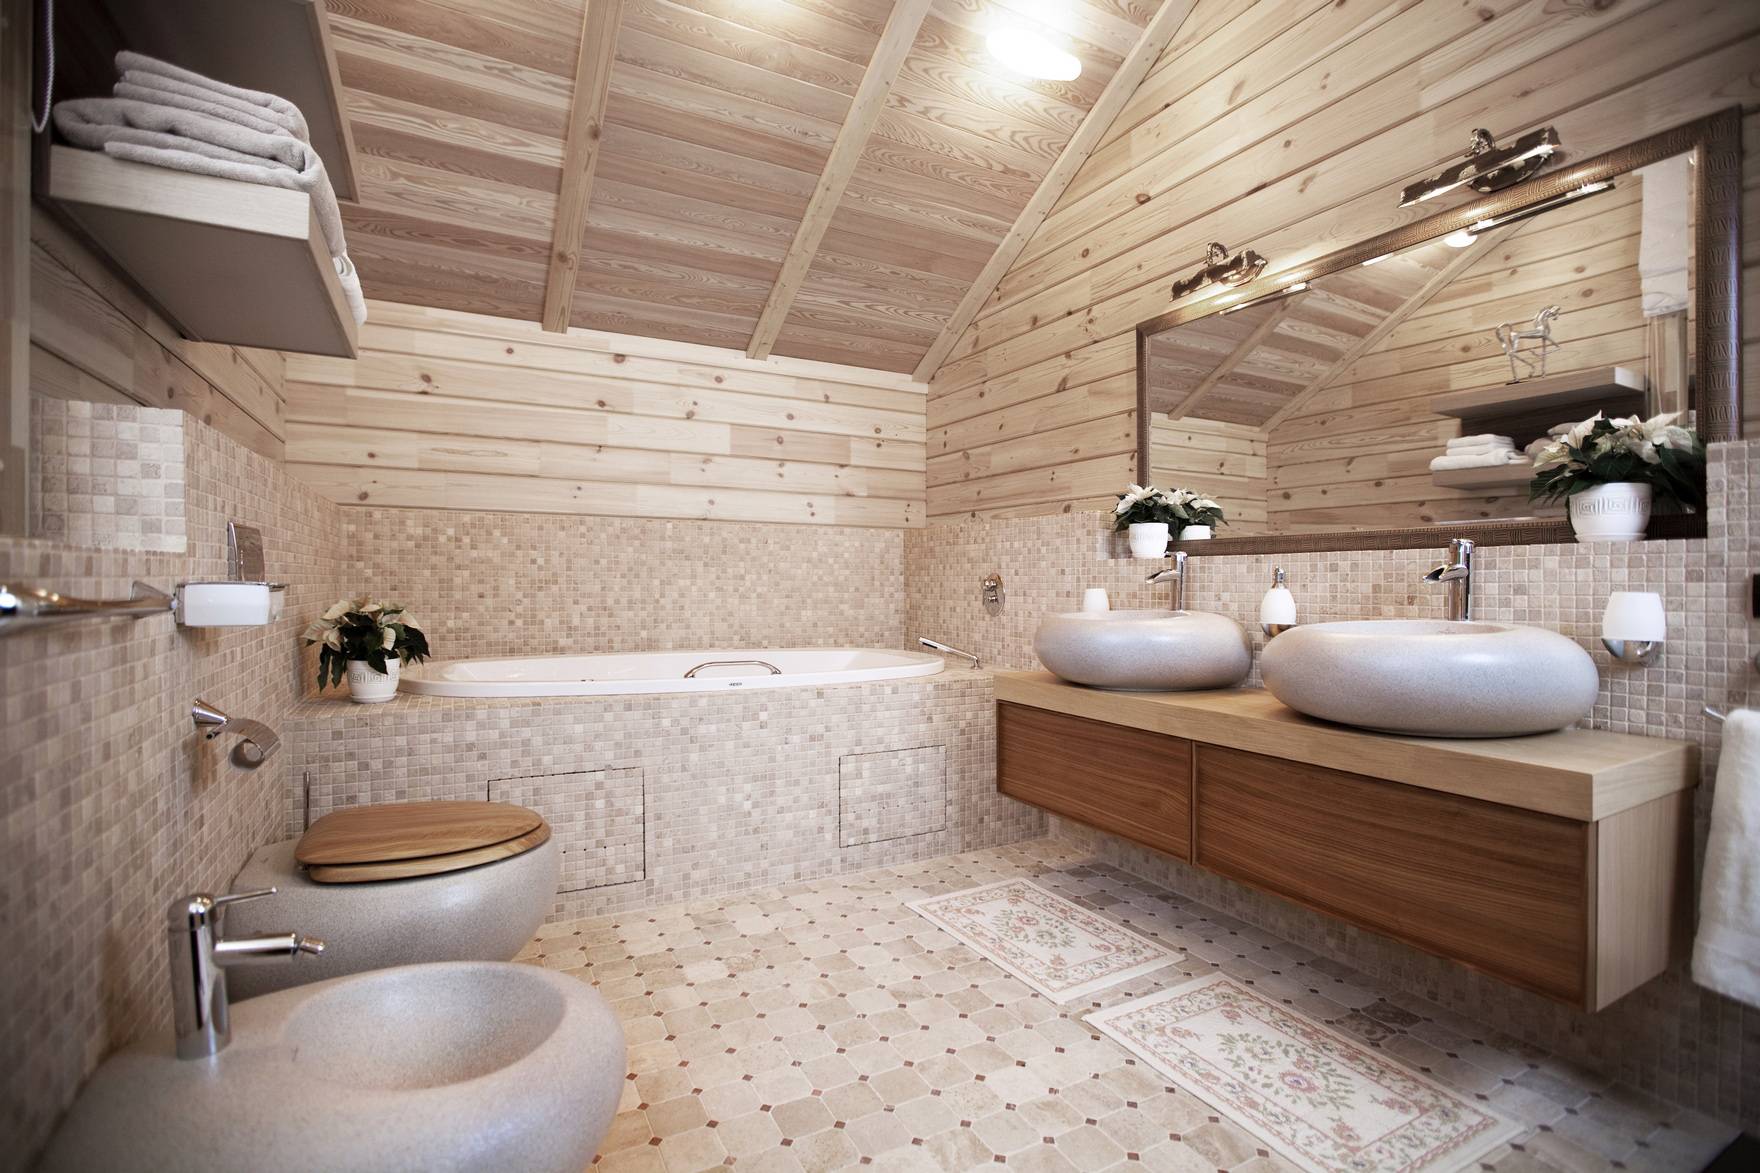 Ванная комната в деревянном доме: как ее грамотно обустроить | ремонт и дизайн ванной комнаты